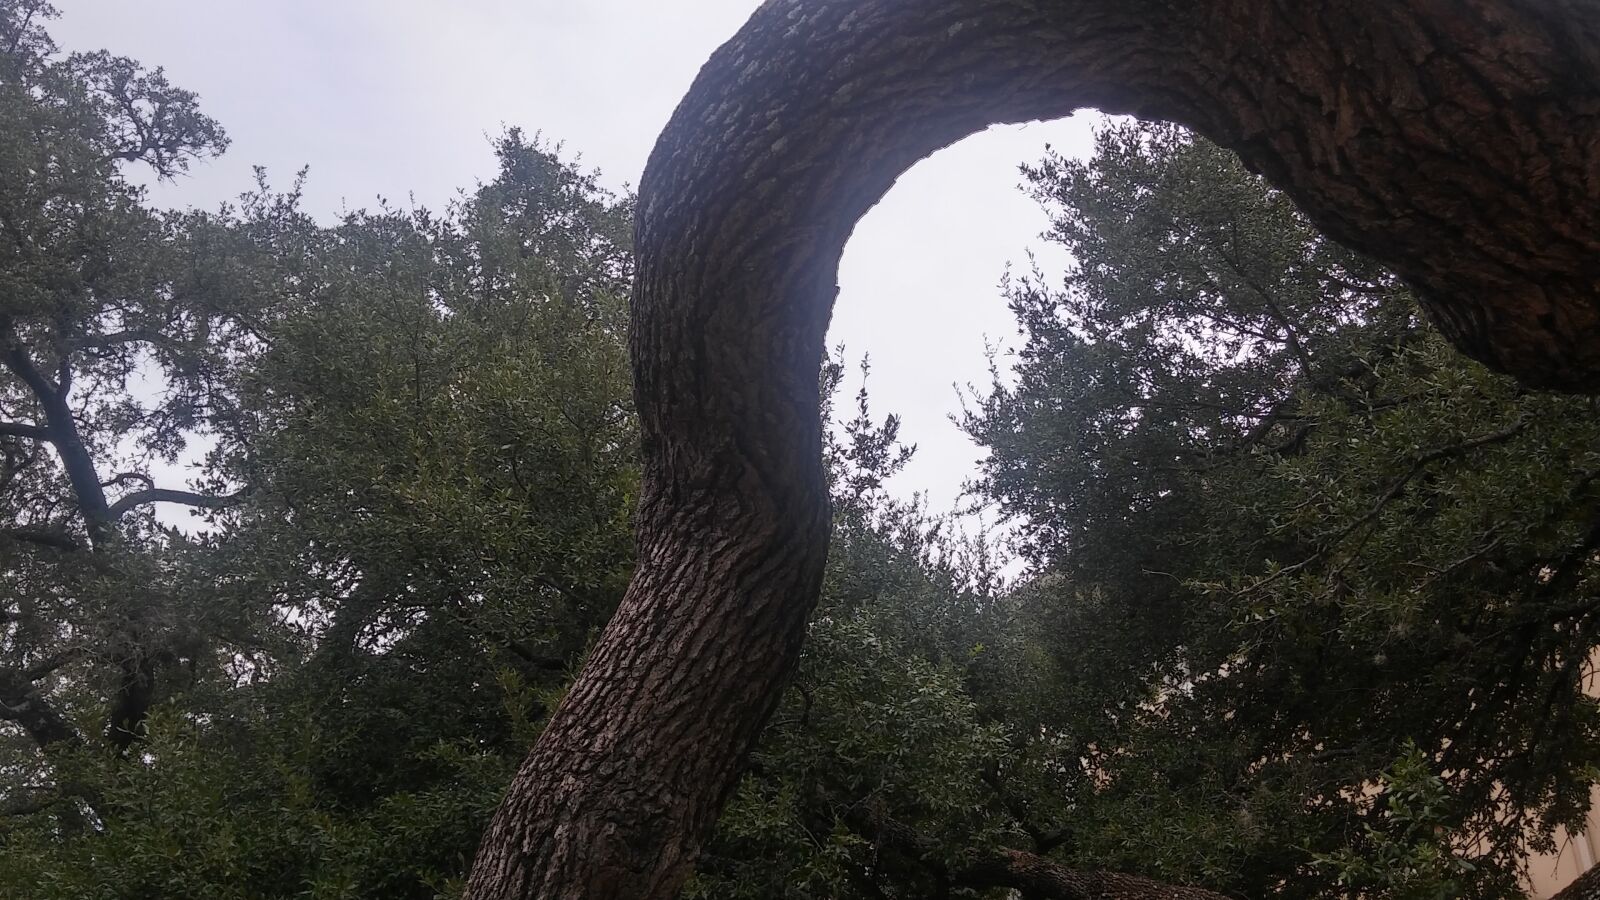 LG G STYLO sample photo. Tree, nature, wood photography